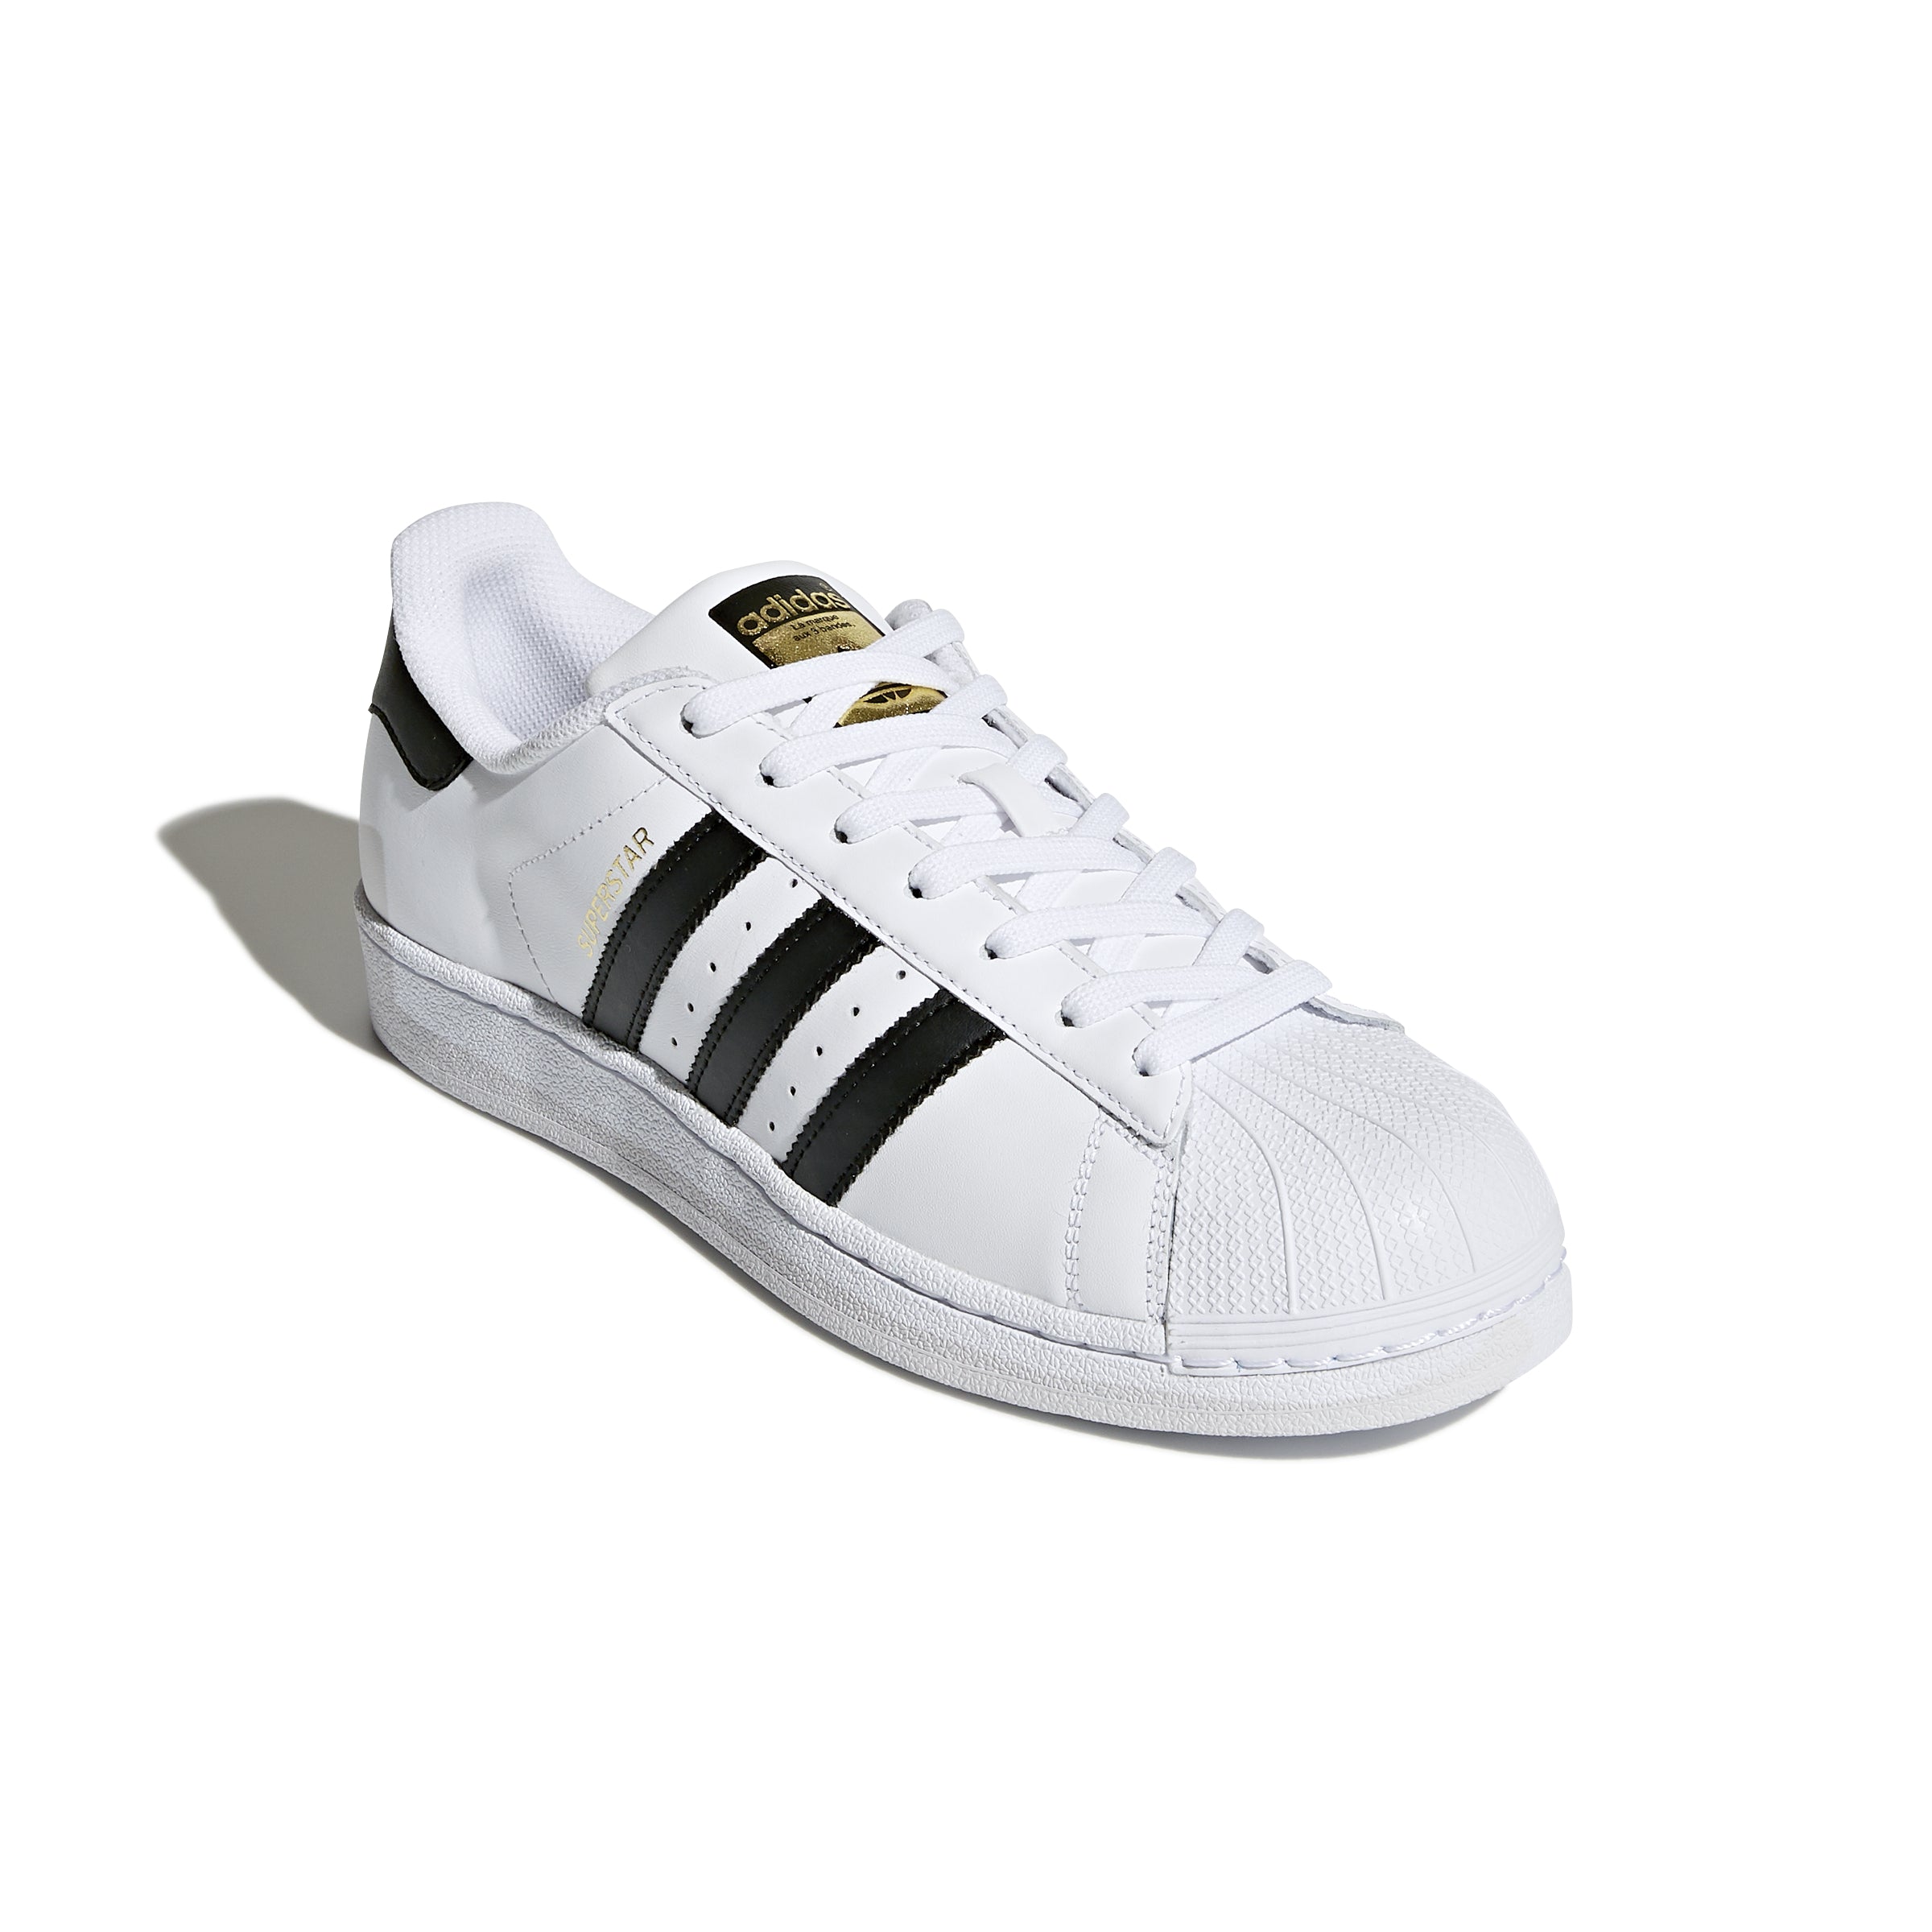 Adidas - Superstar White/Black C77124 – CHAUSSURES